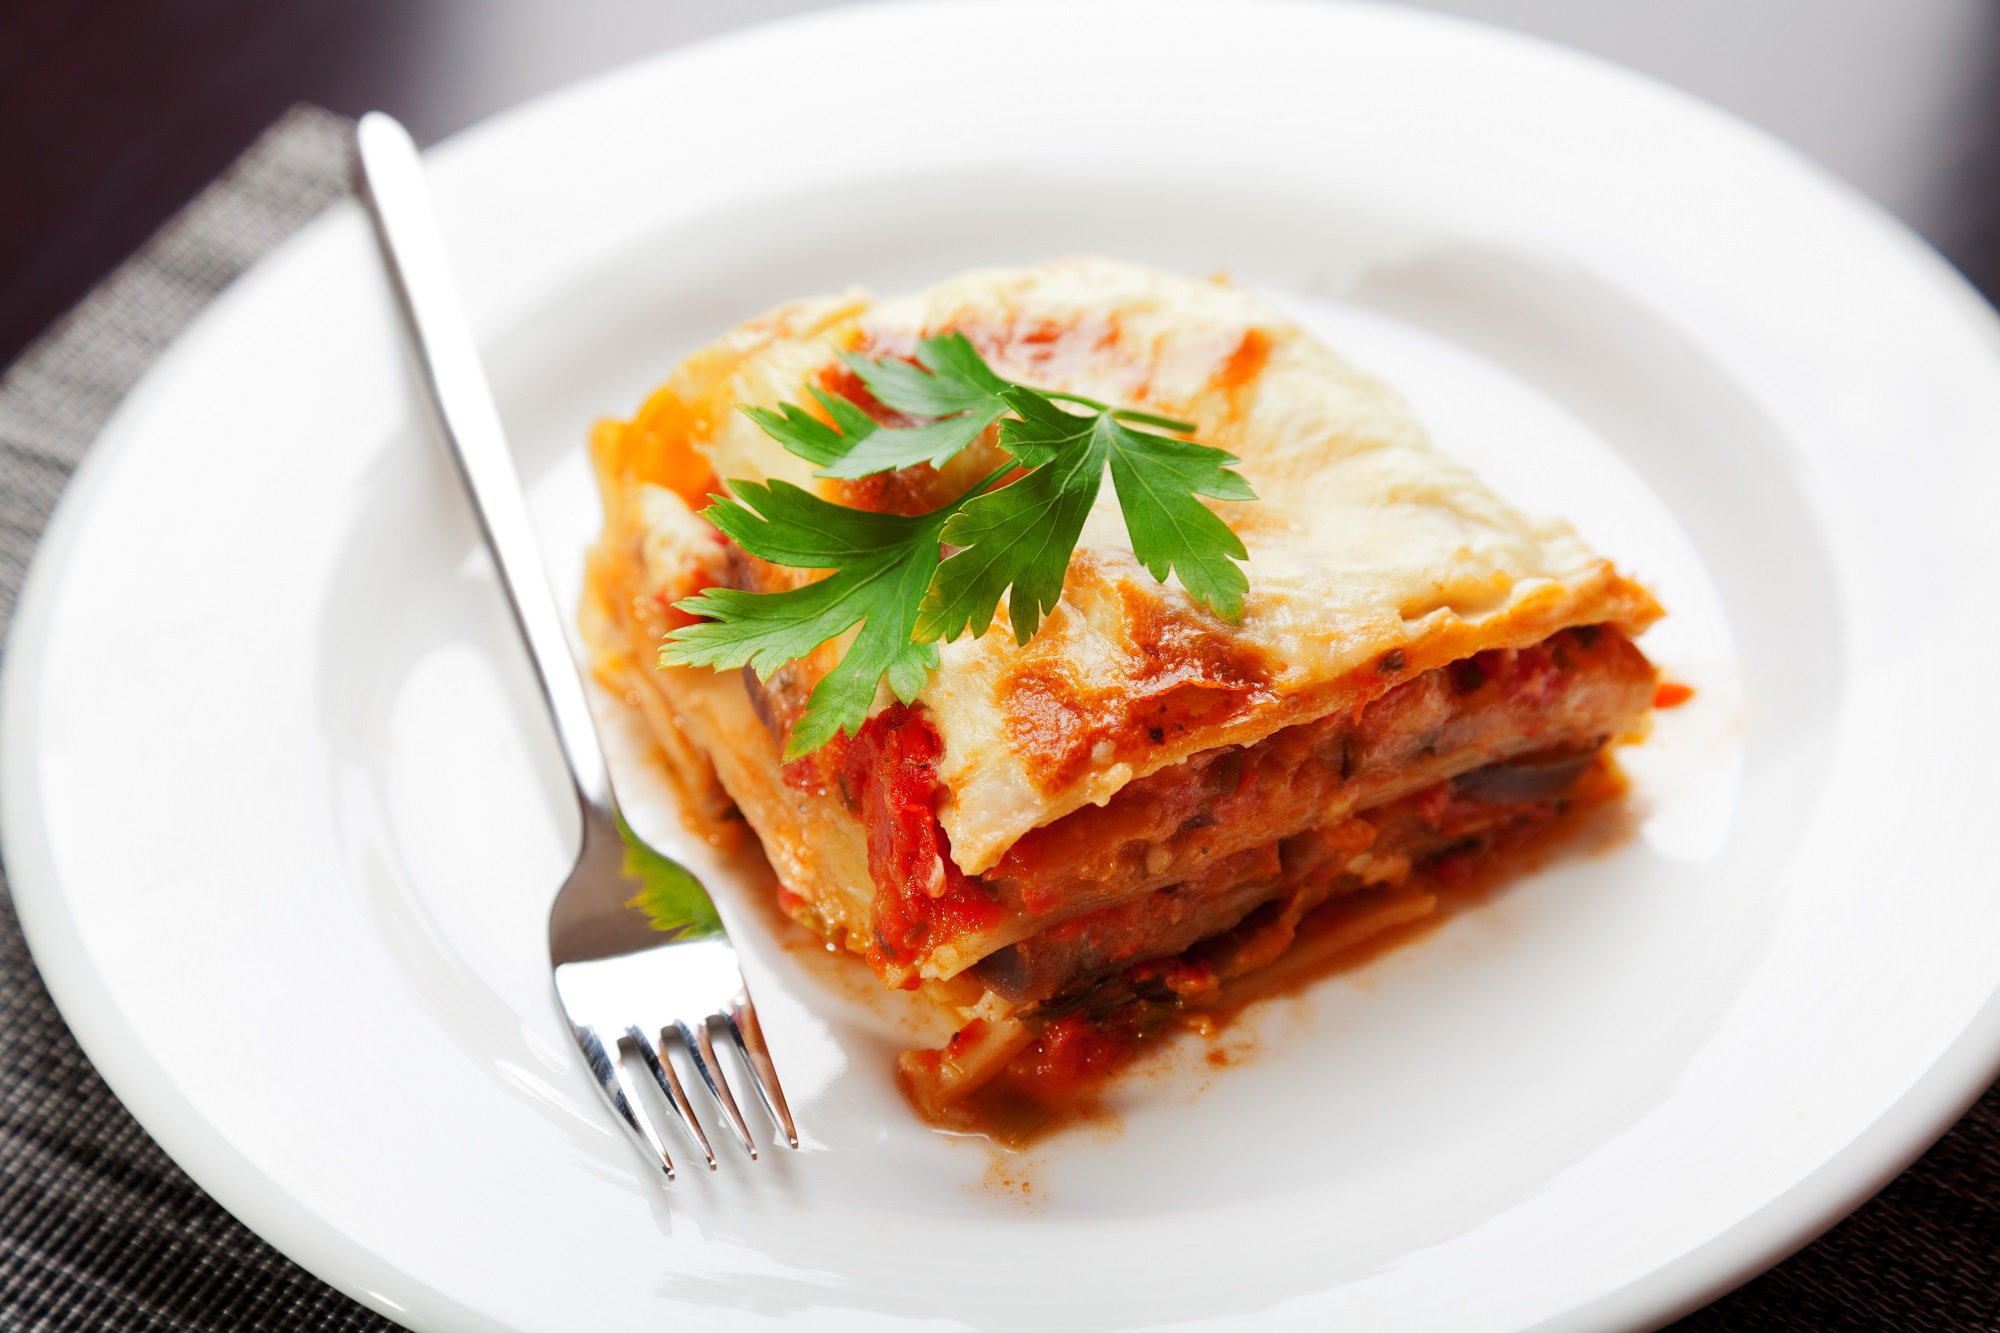 Zum Tag der Lasagne: 5 Fun Facts, die man gar nicht glauben kann